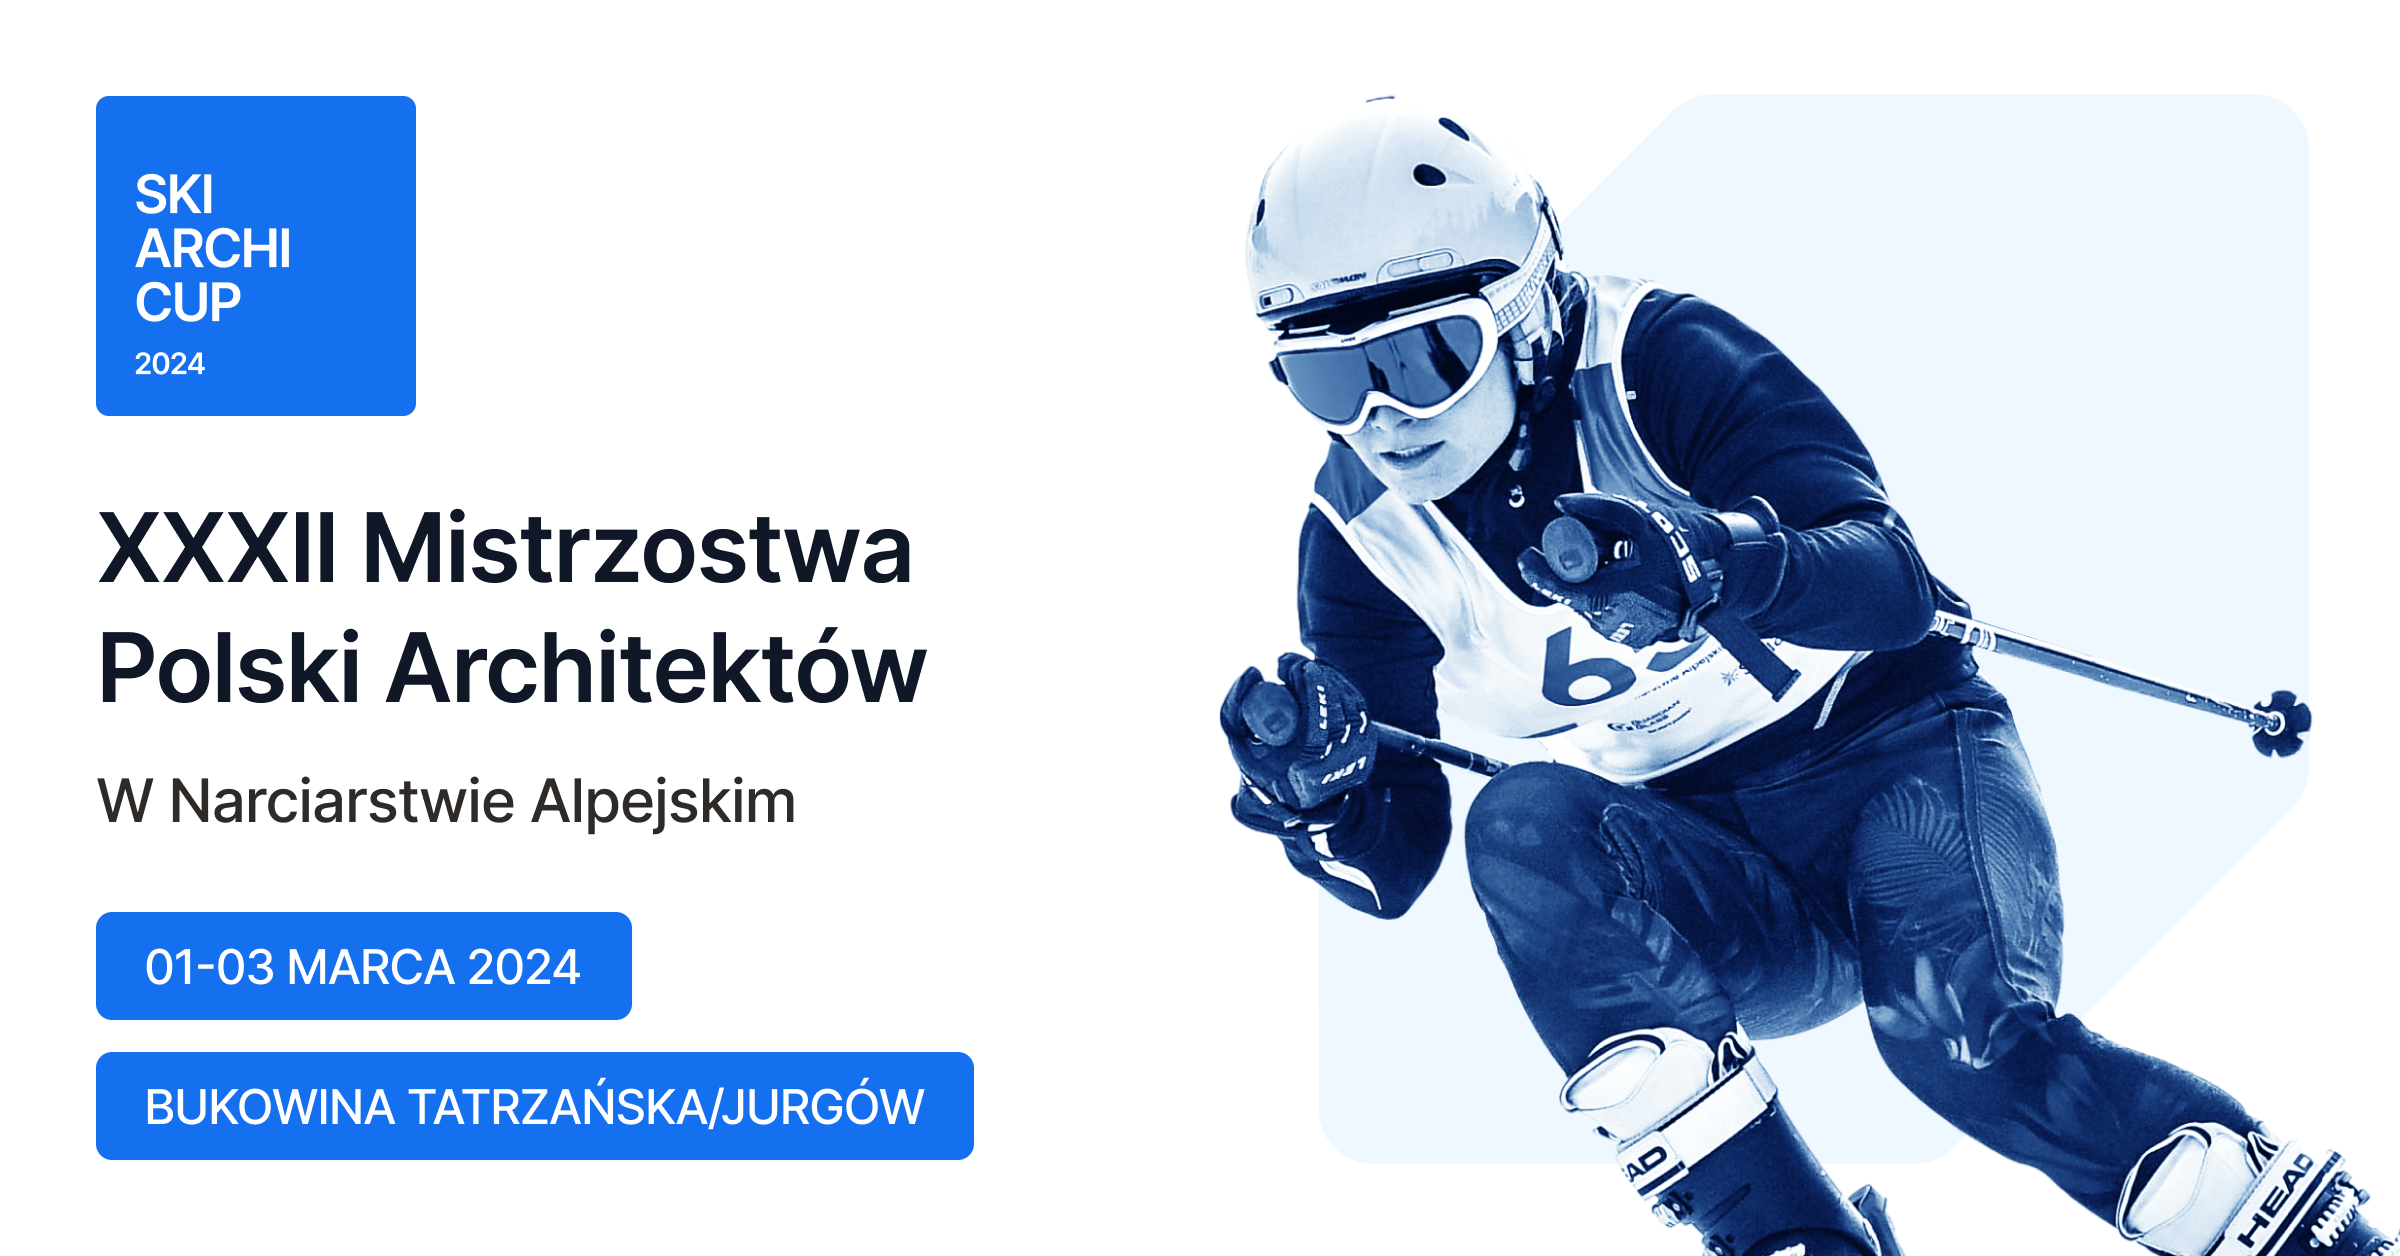 XXXII Mistrzostwa Polski Architektów w Narciarstwie Alpejskim i Snowboardzie – Ski ArchiCup 2024